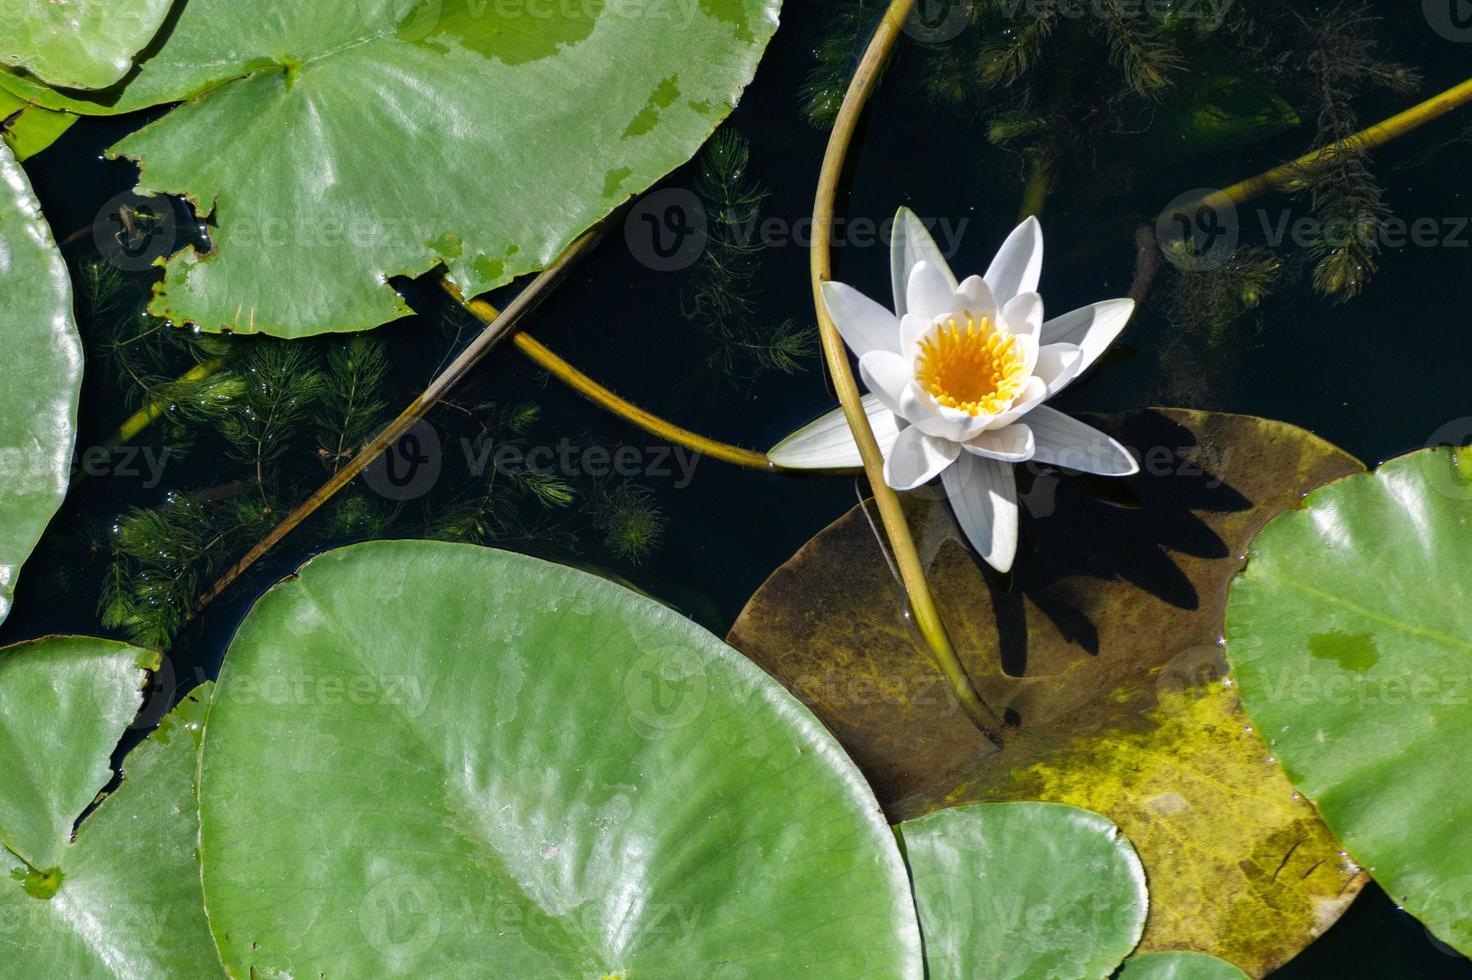 waterleliebloem in rivier, nationaal symbool van bangladesh, mooie witte lotusbloem met geel stuifmeel. foto